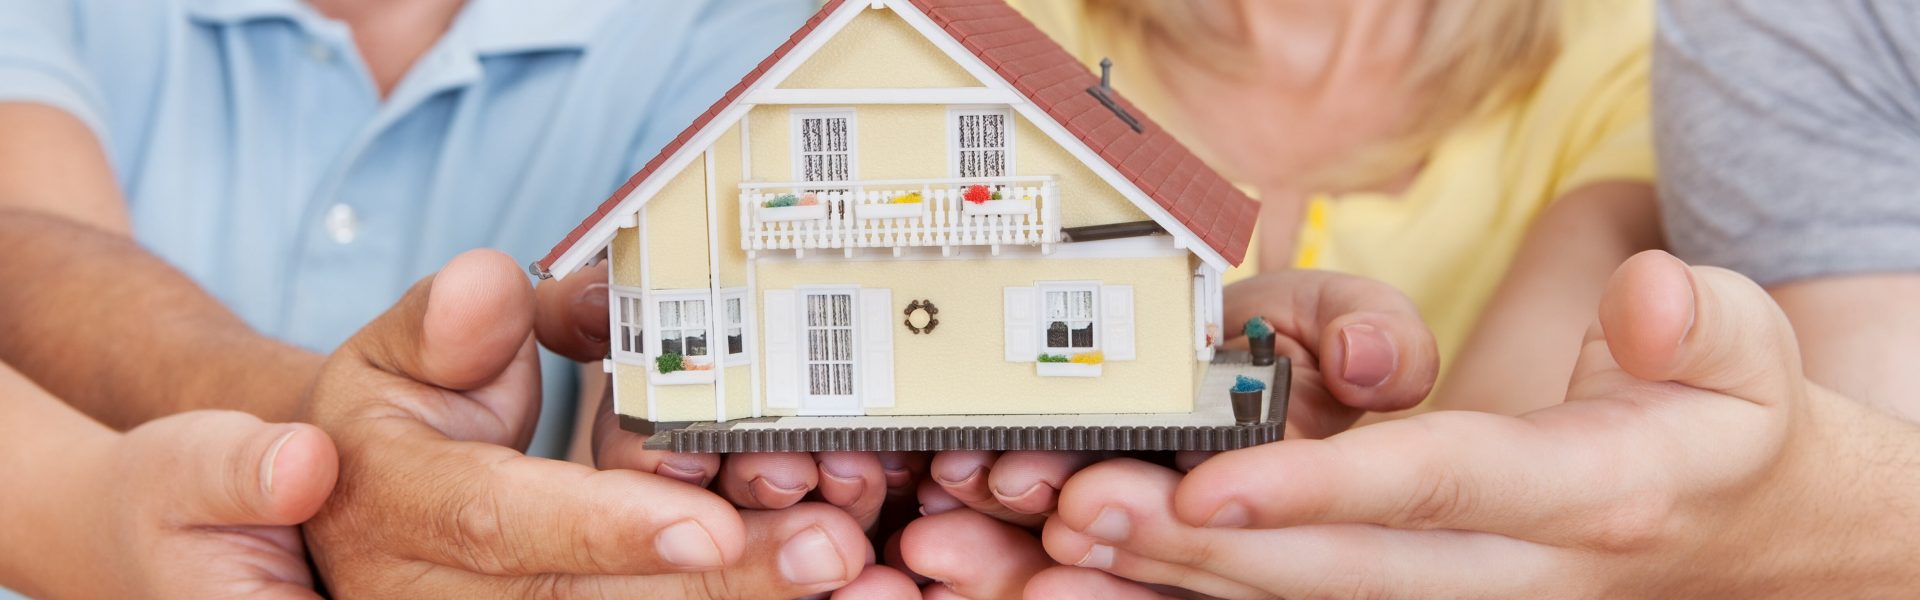 Как определить имущество человека - способы выявления недвижимости